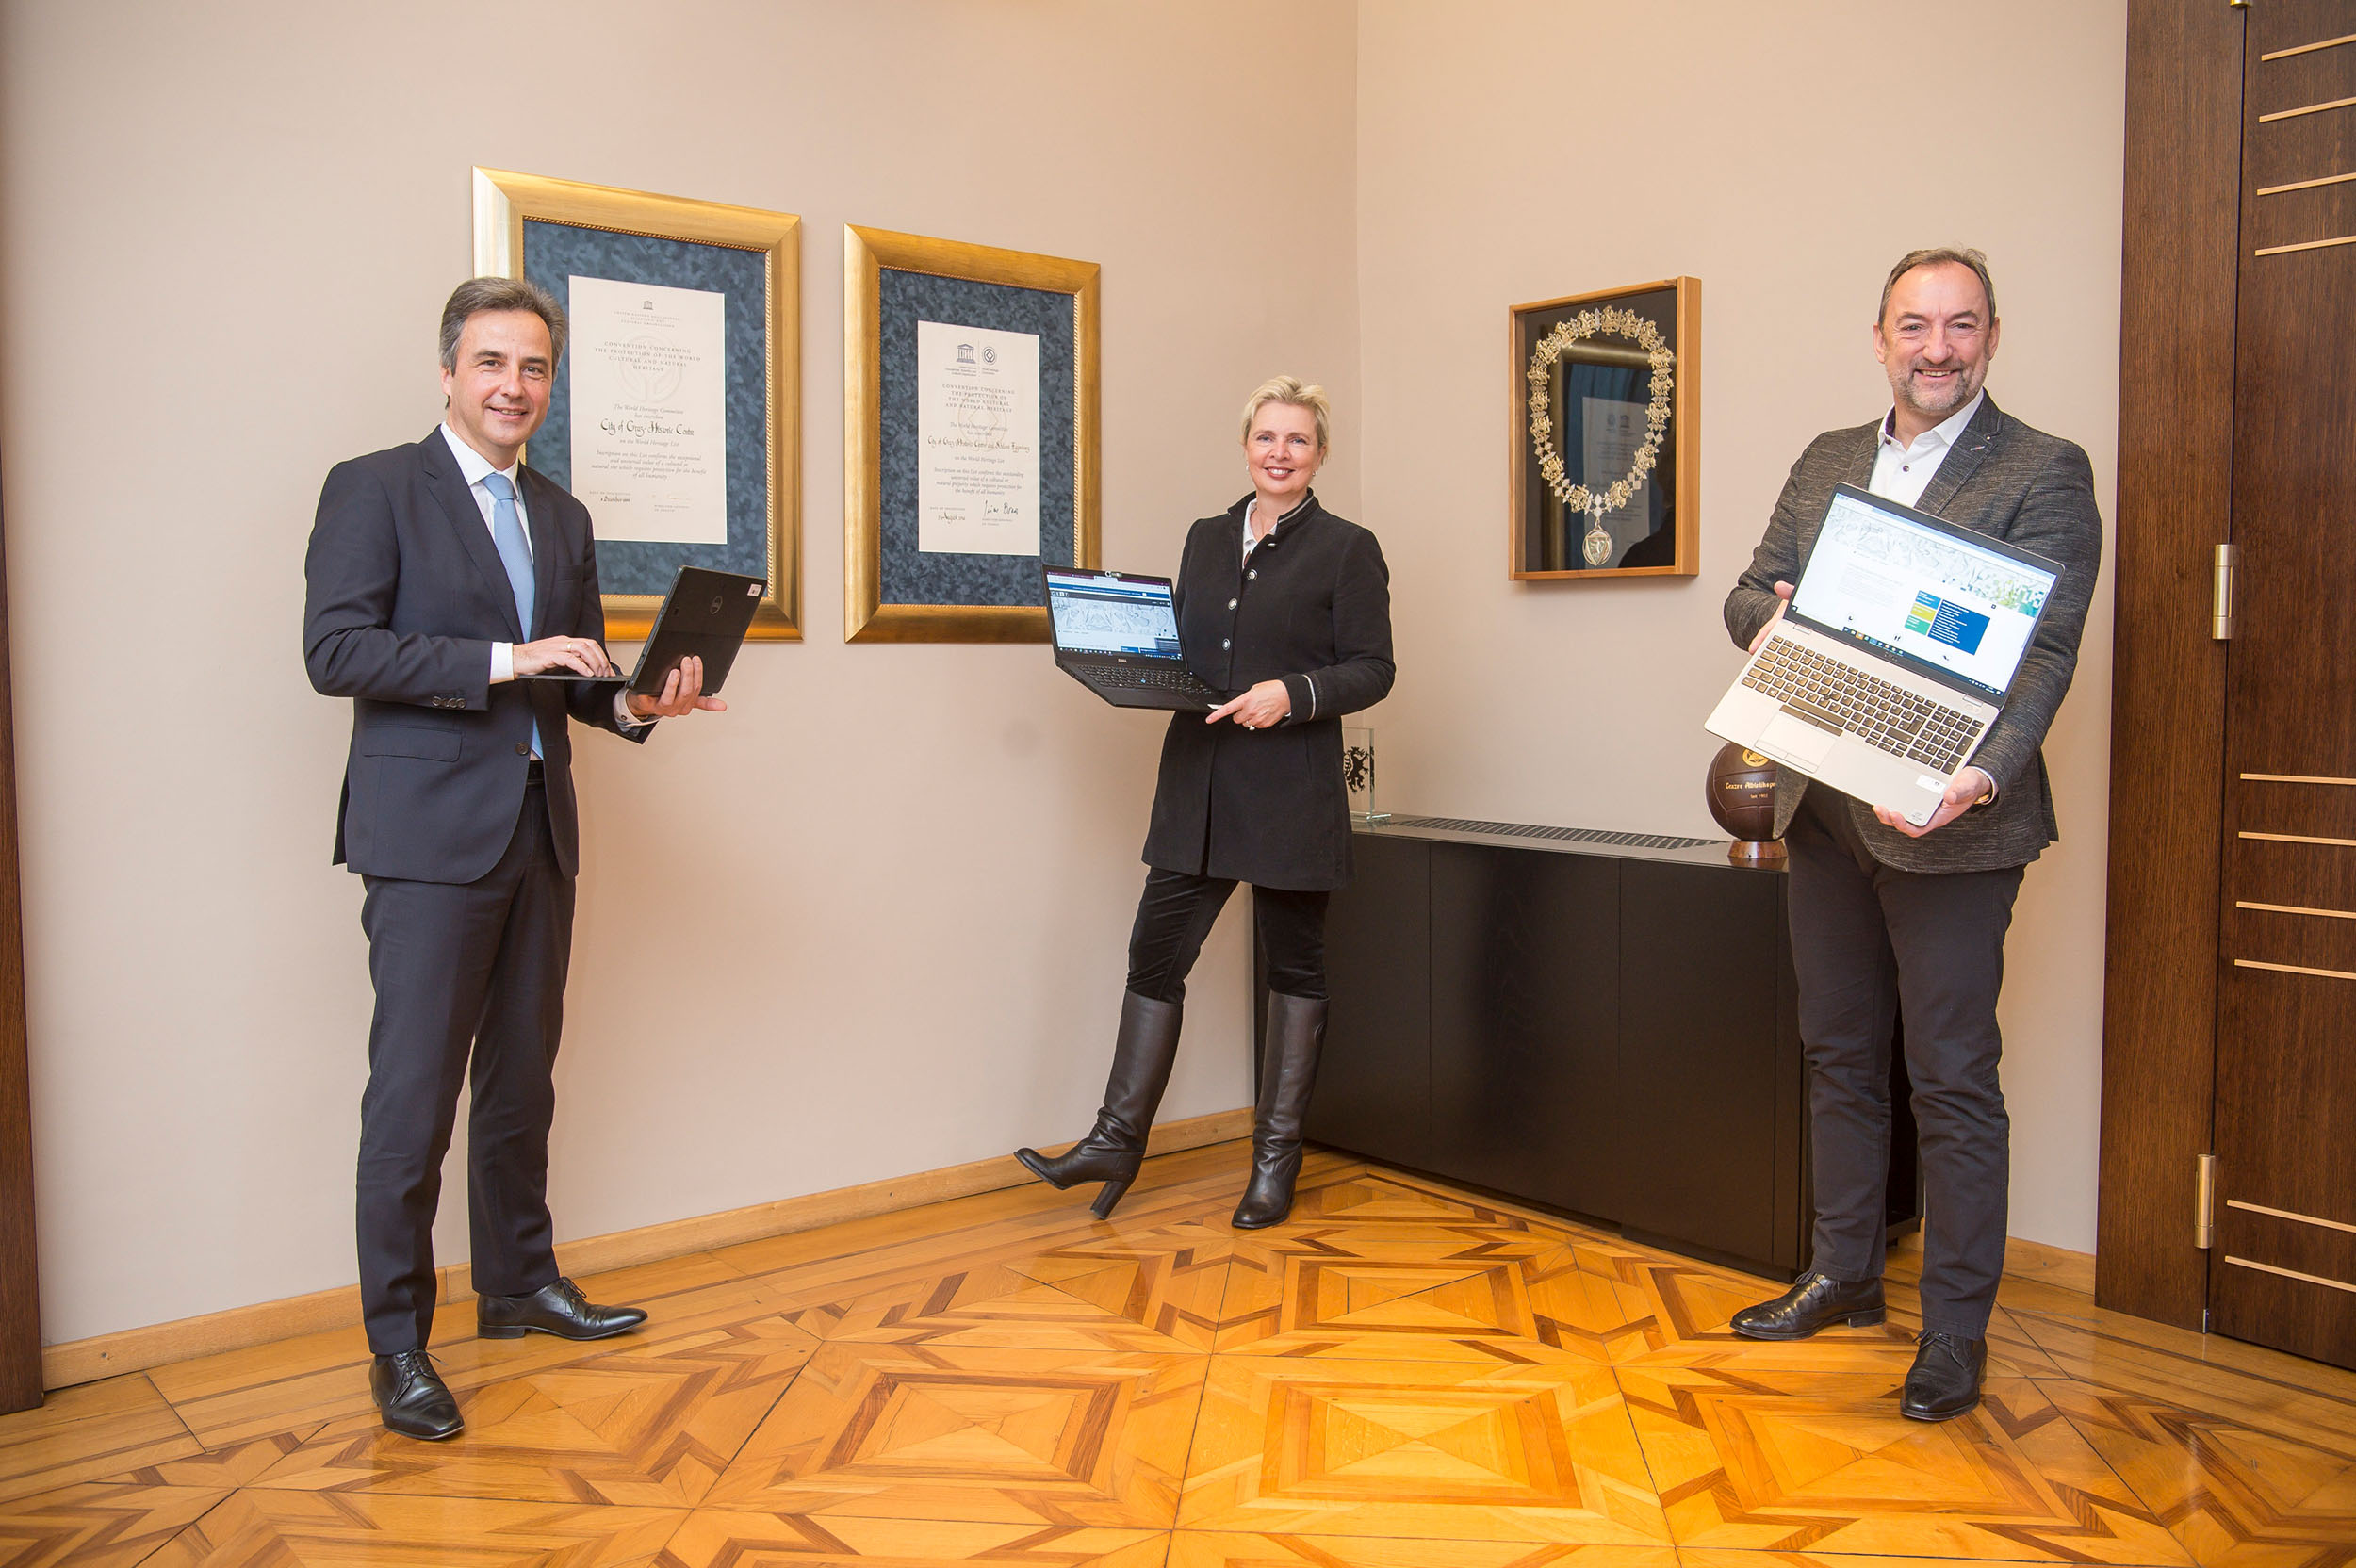 v.l.: Bürgermeister Siegfried Nagl, Präsidialamtsvorständin Verena Ennemoser und Vizebürgermeister Mario Eustacchio freuen sich über die moderne Lösung für digitale Amtswege.